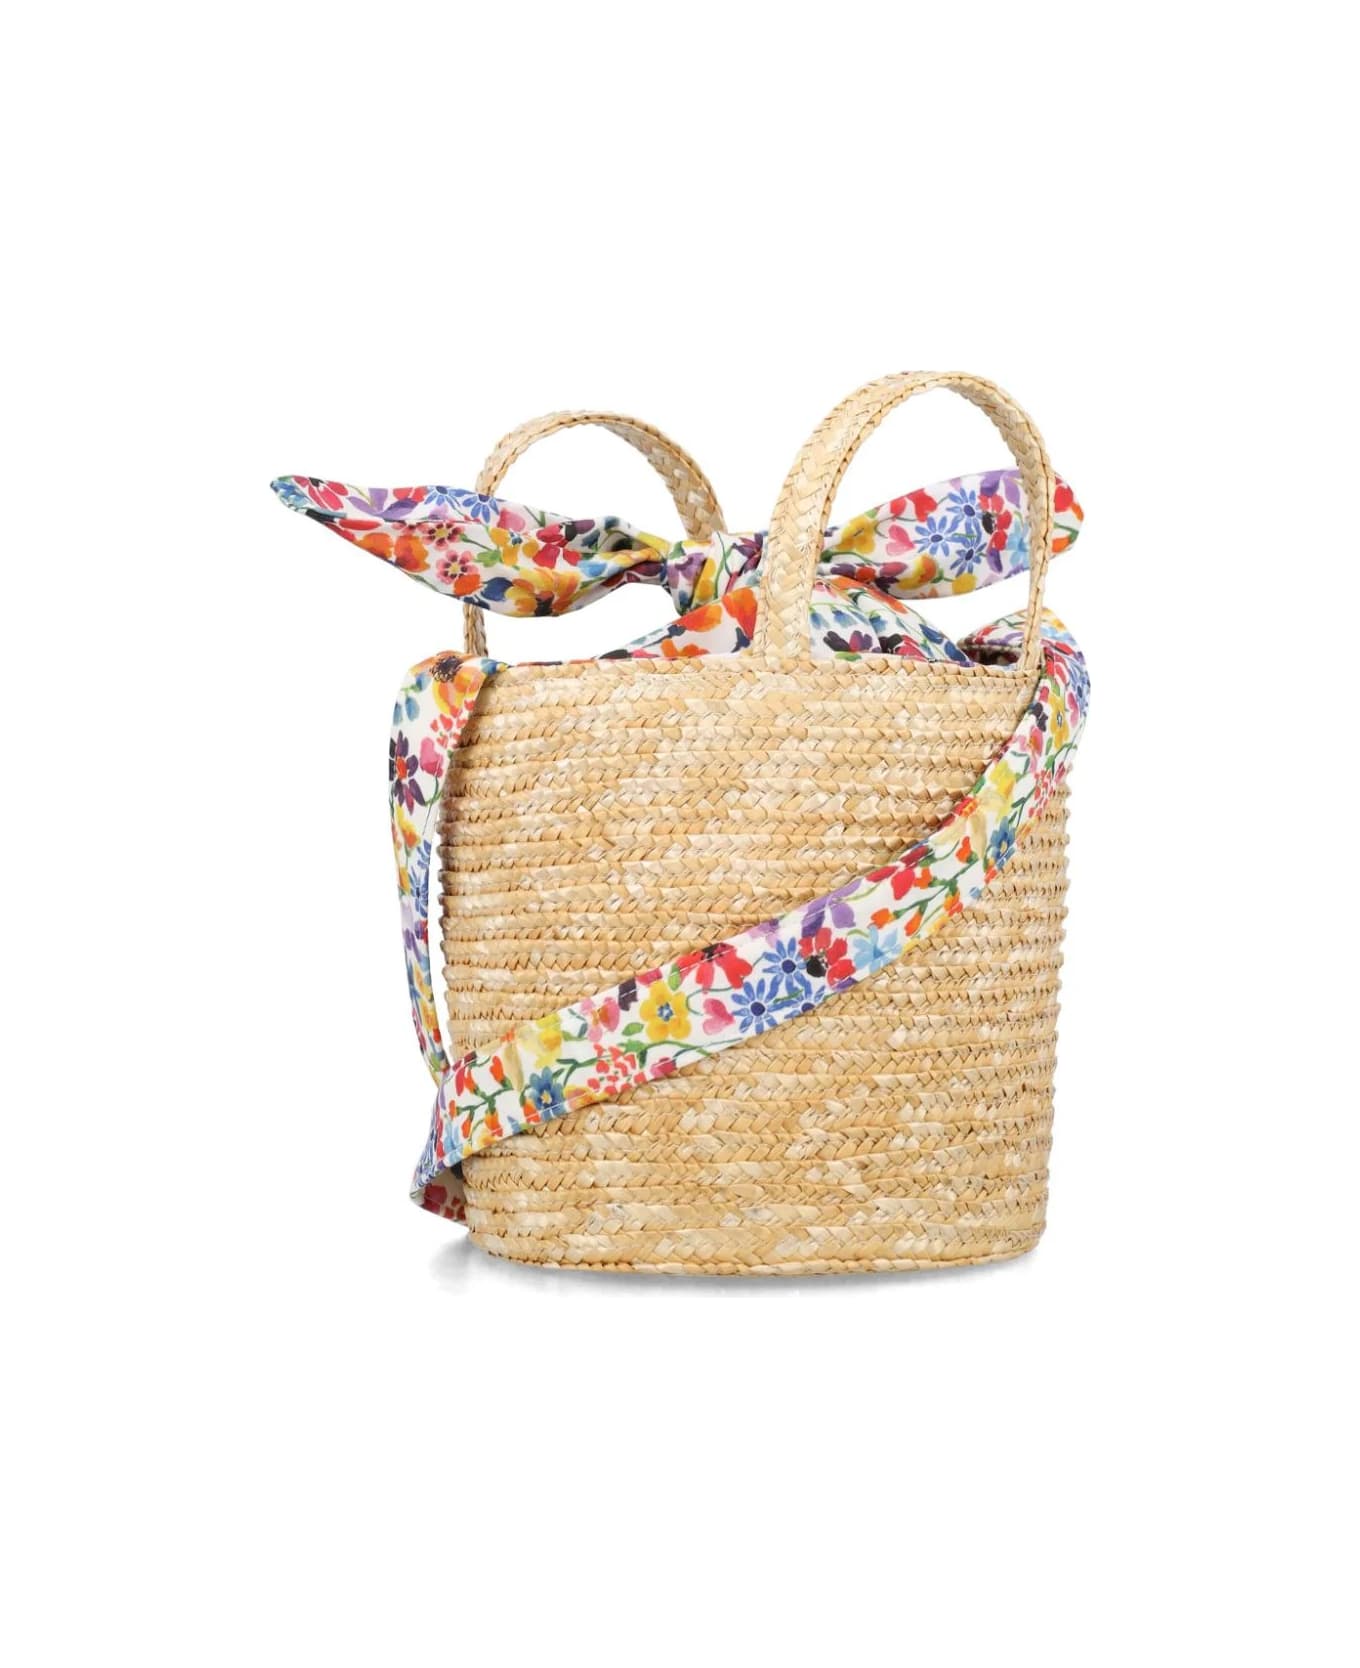 Il Gufo Liberty Fabric Cotton And Natural Straw Bucket Bag - Multicolour